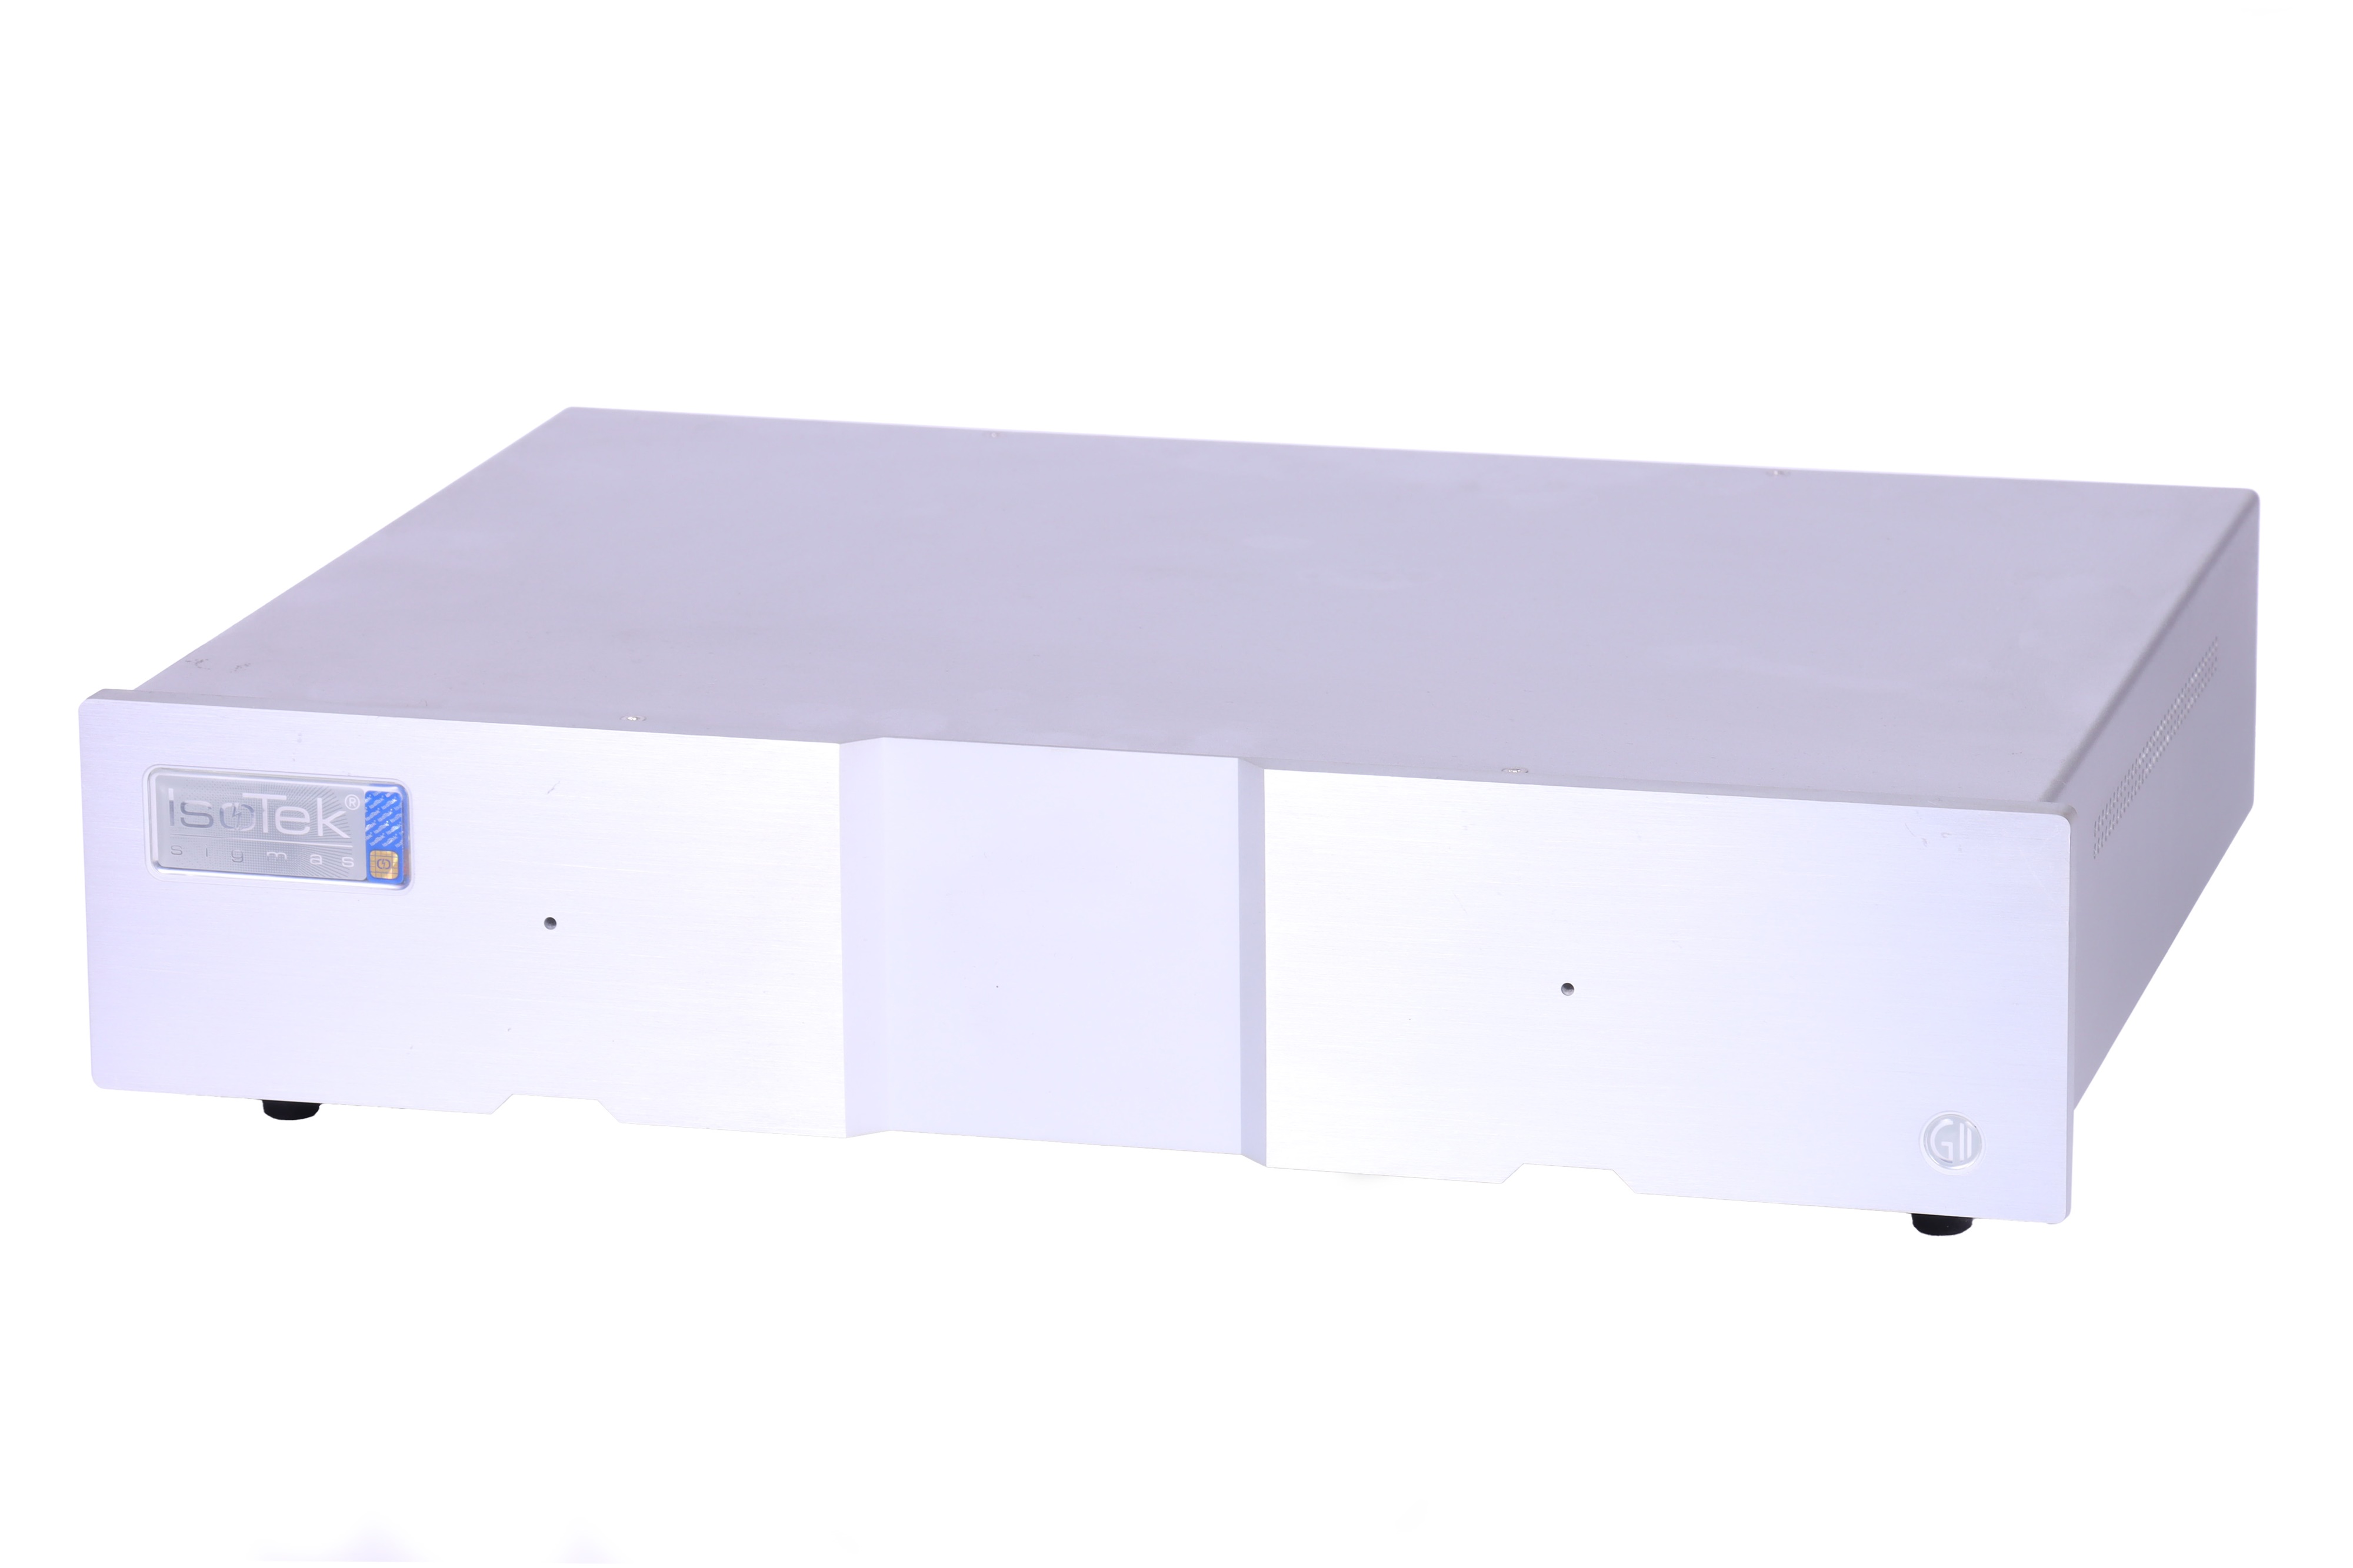 An Isotek Sigmas Mains Filtration Box,